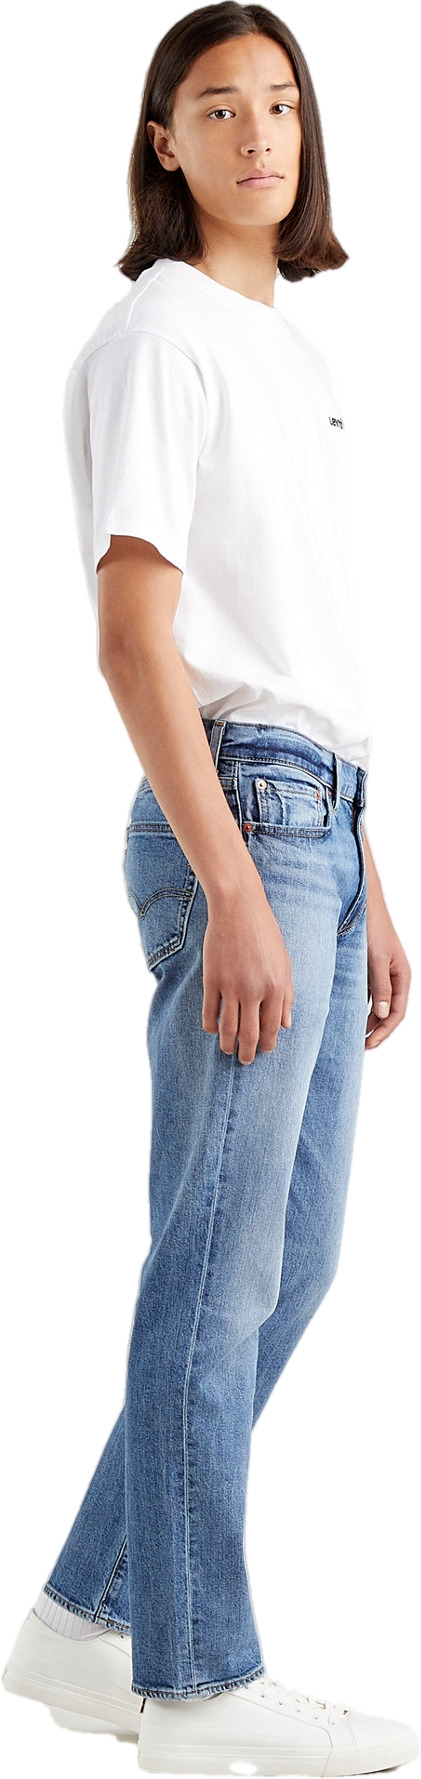 джинсы левайс женские модели фото и цены